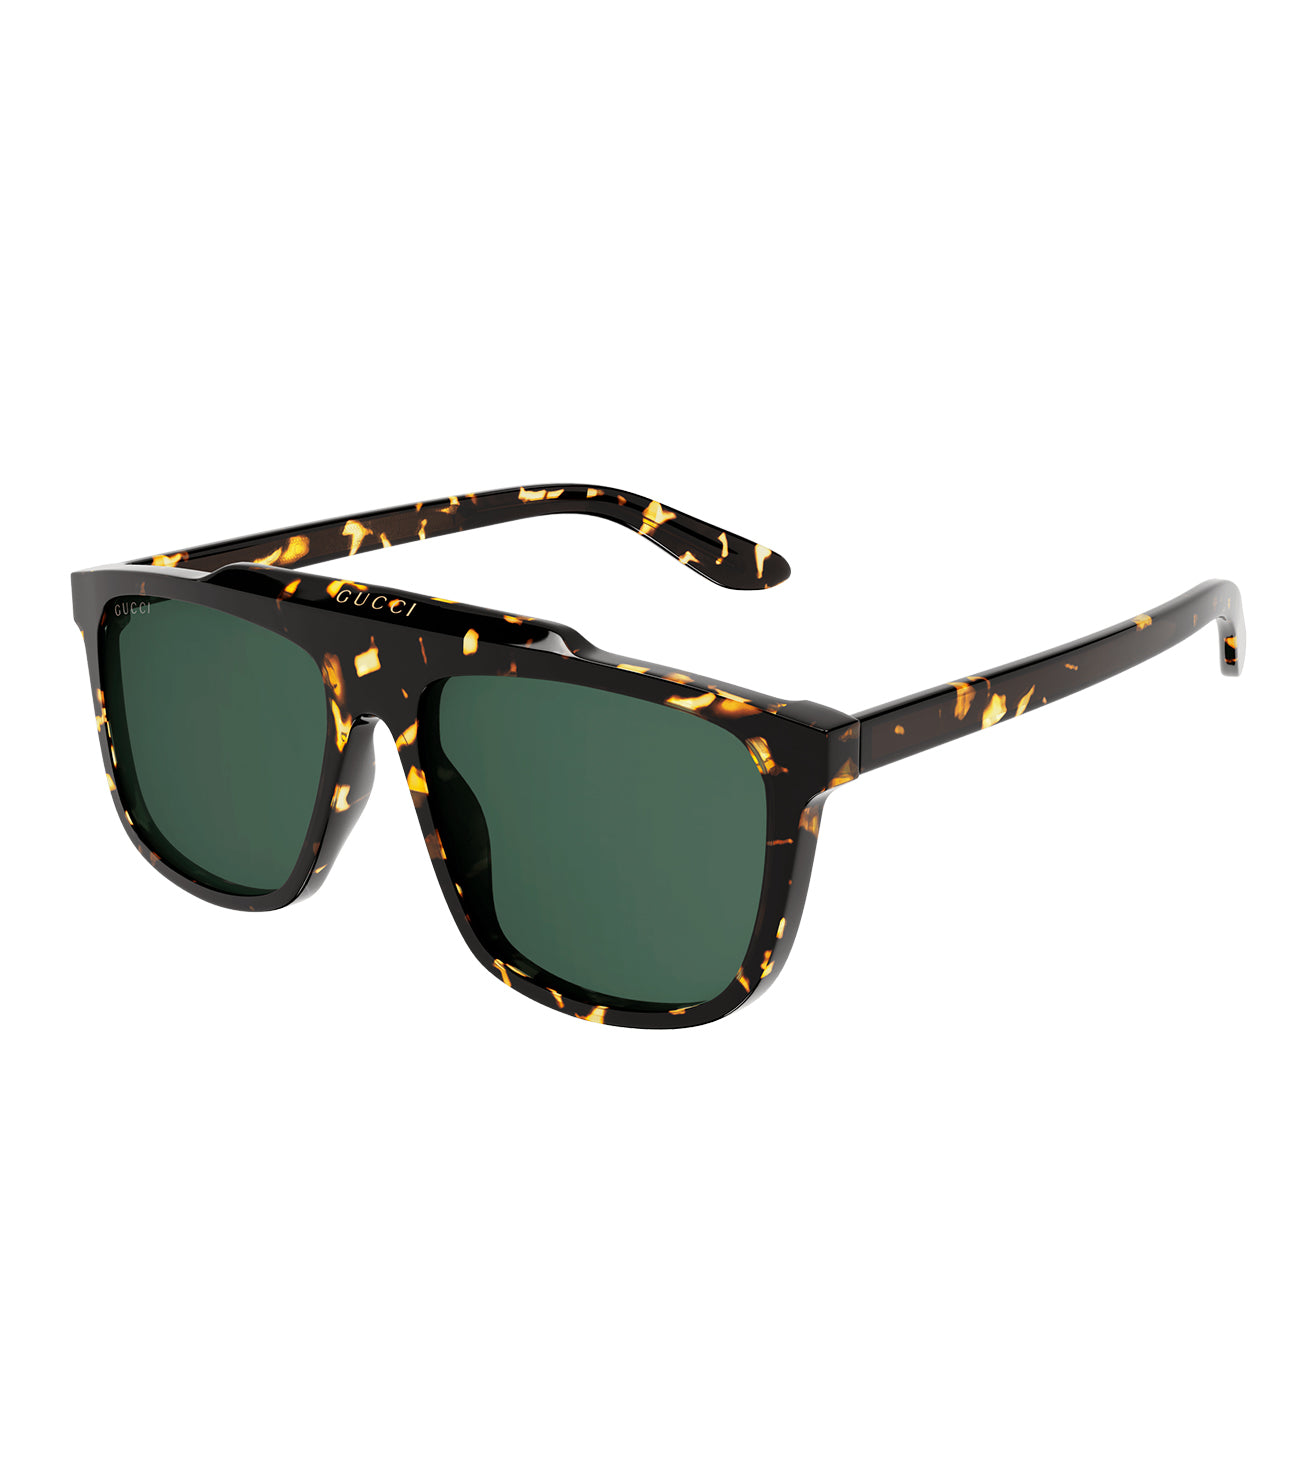 Gucci Men's Green Aviator Sunglasses